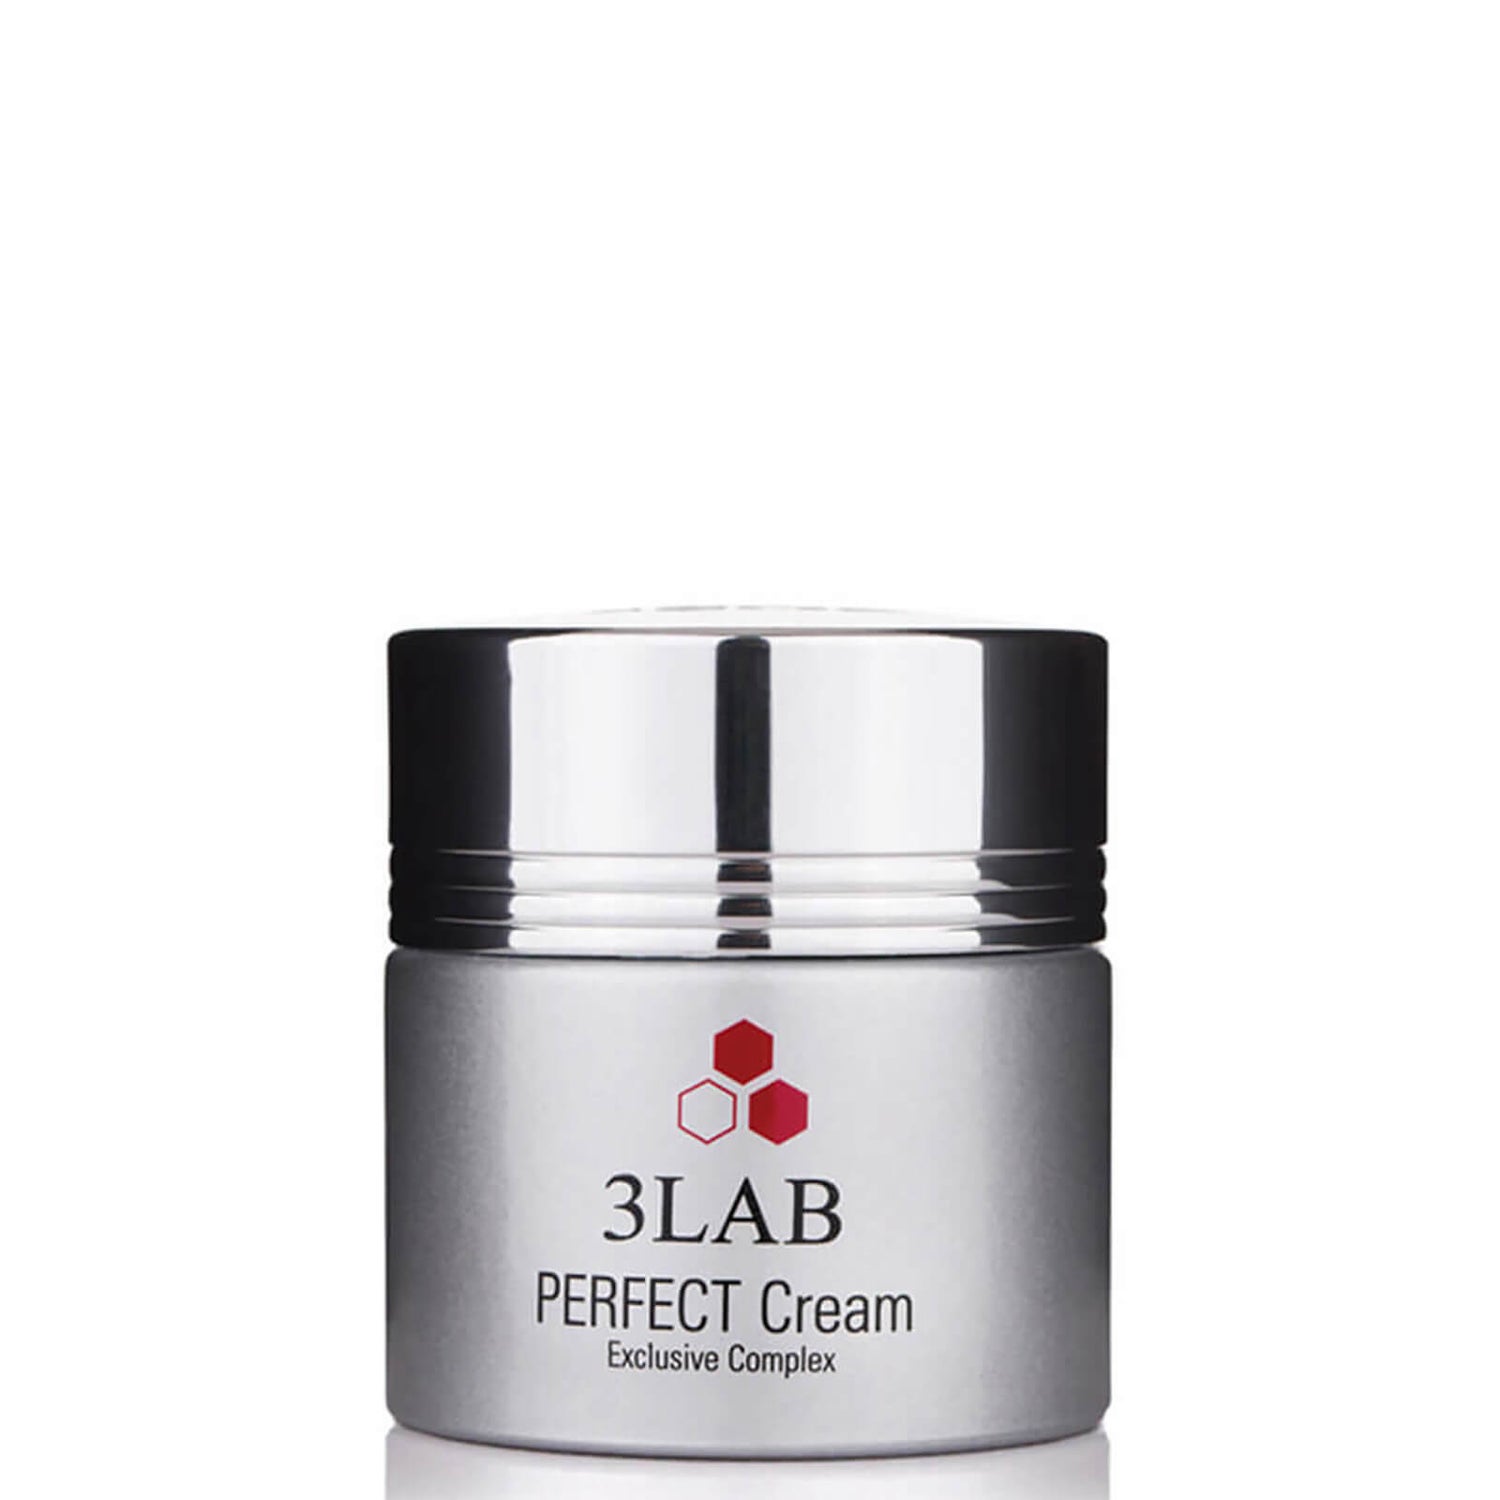 3LAB Perfect Cream